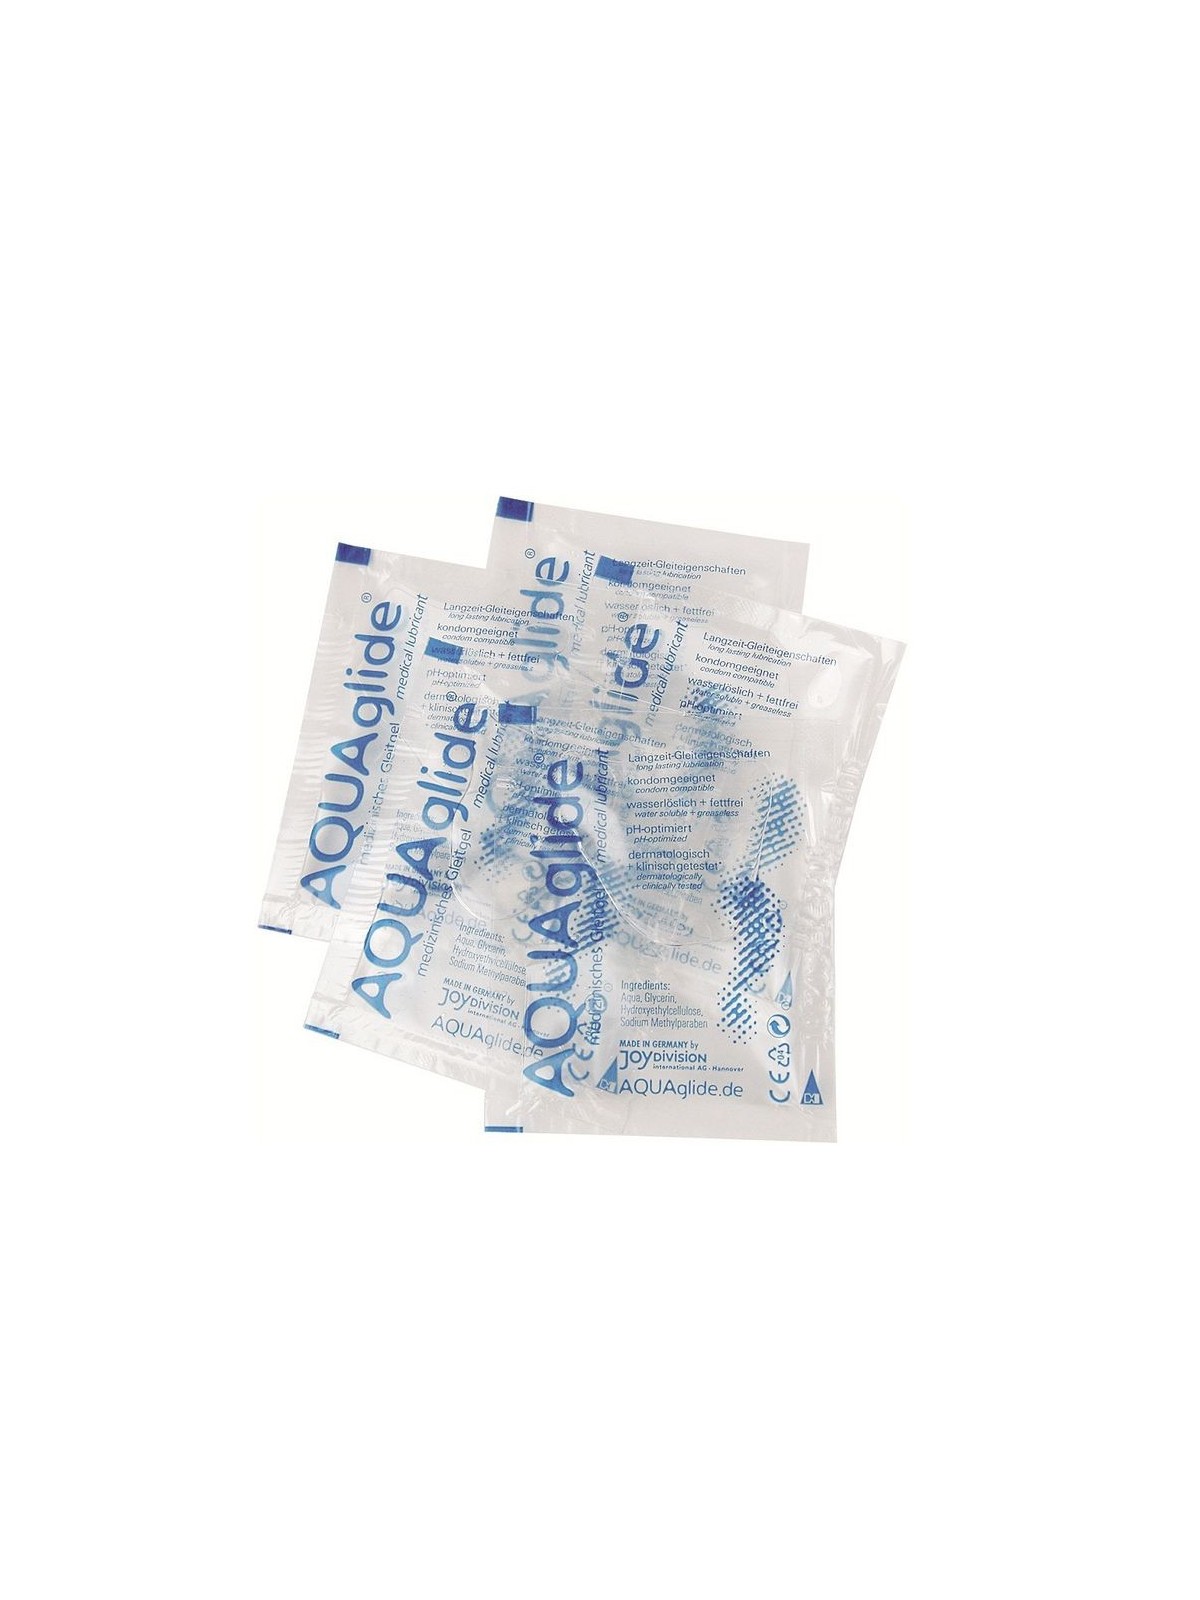 Aquaglide Lubricante 1 Monodosis - Comprar Lubricante agua Aquaglide - Lubricantes monodosis (1)